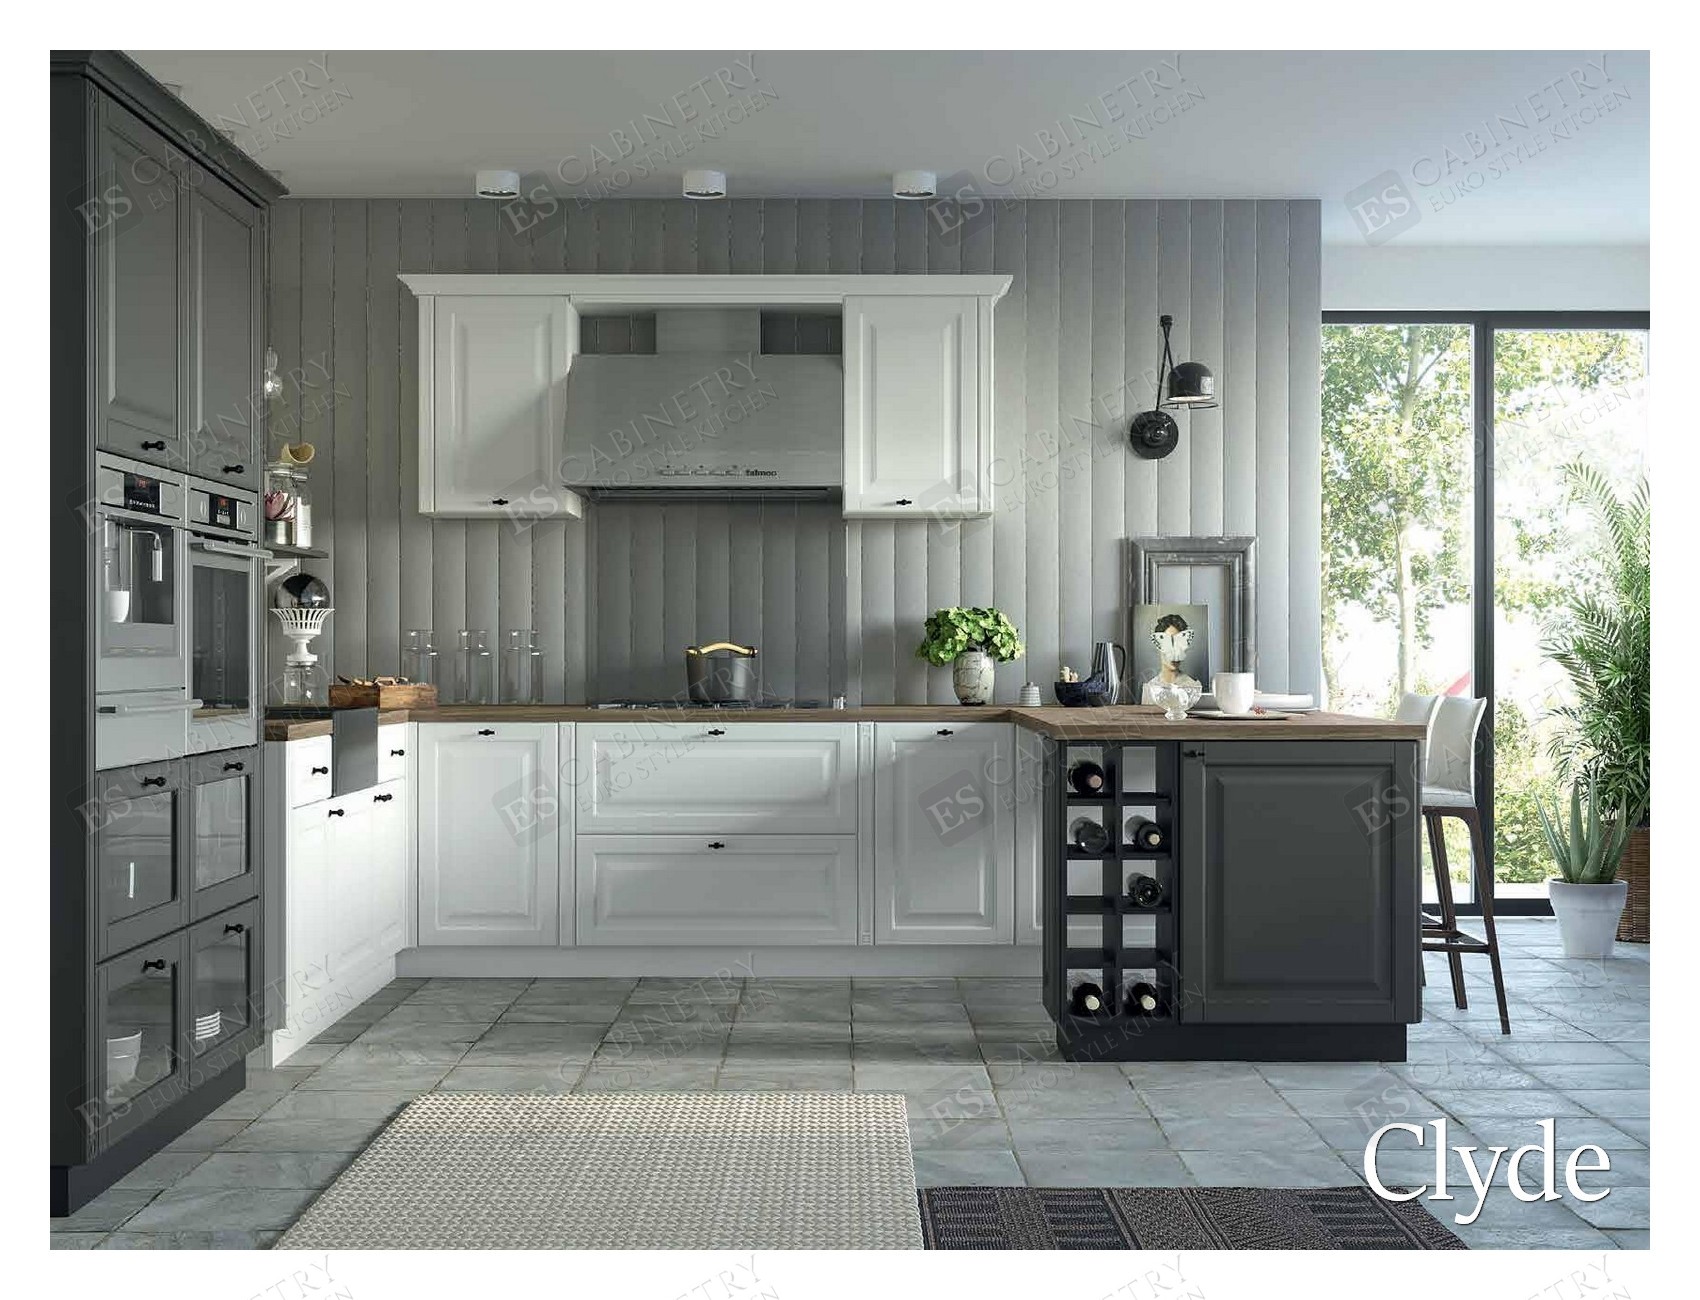 Clyde | European design kitchens